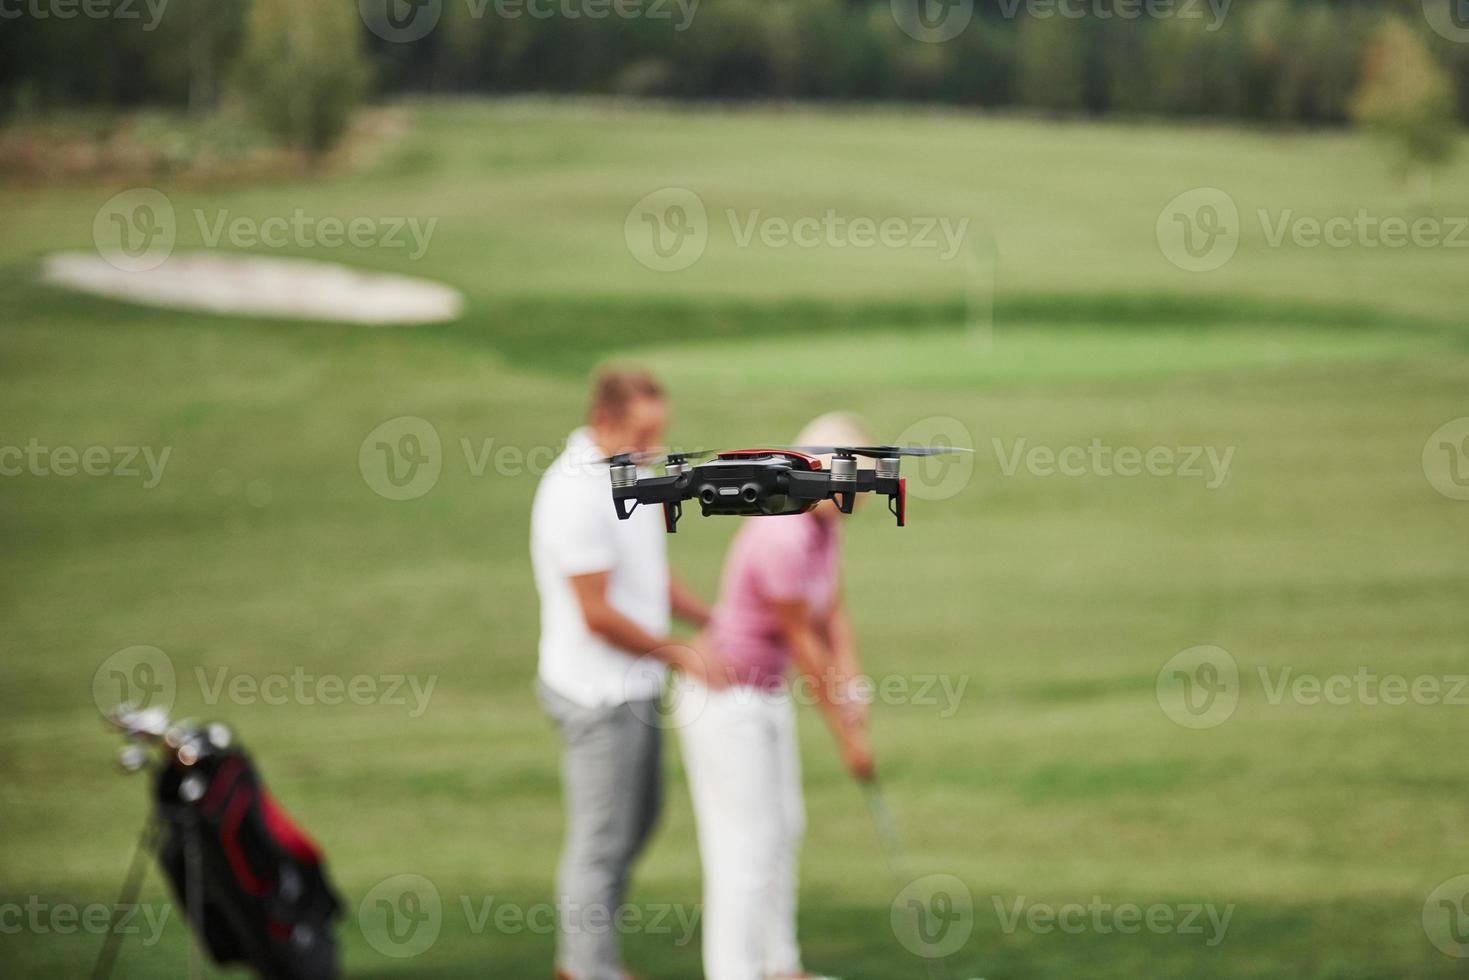 grupp snygga vänner på golfbanan lär sig spela ett nytt spel foto